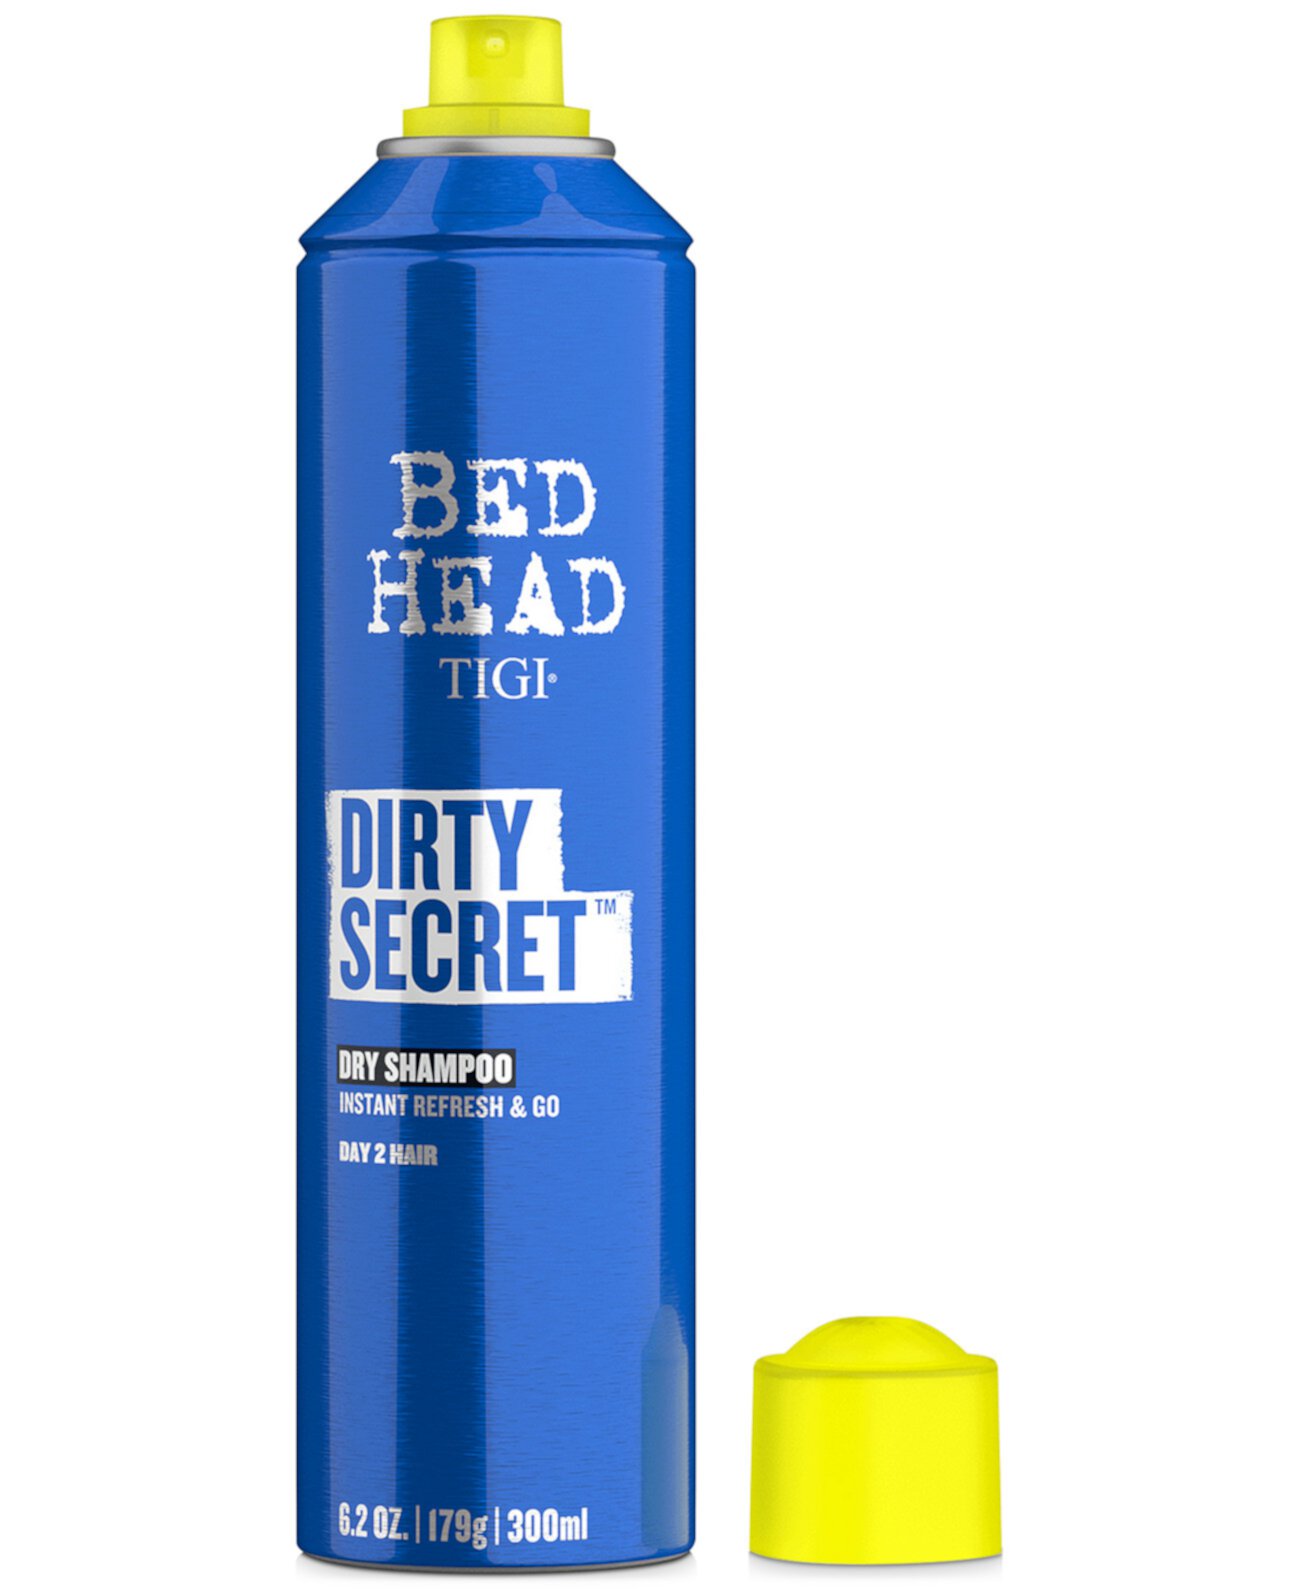 Сухой шампунь Bed Head Dirty Secret, 6,2 унции, от PUREBEAUTY Salon & Spa TIGI